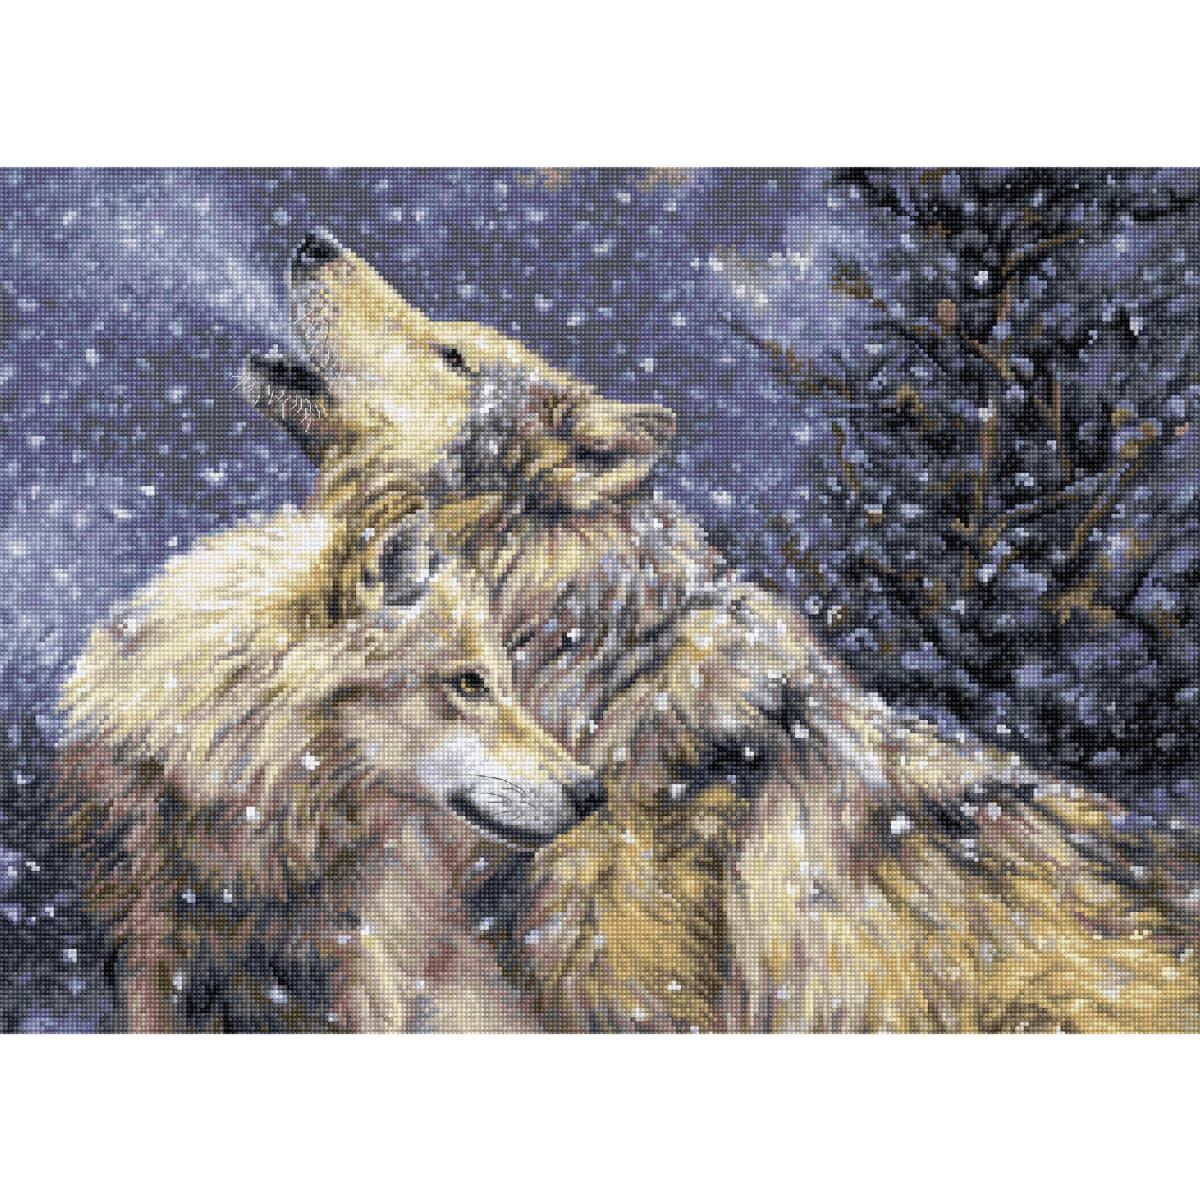 Deux loups se tiennent dans un paysage enneigé...